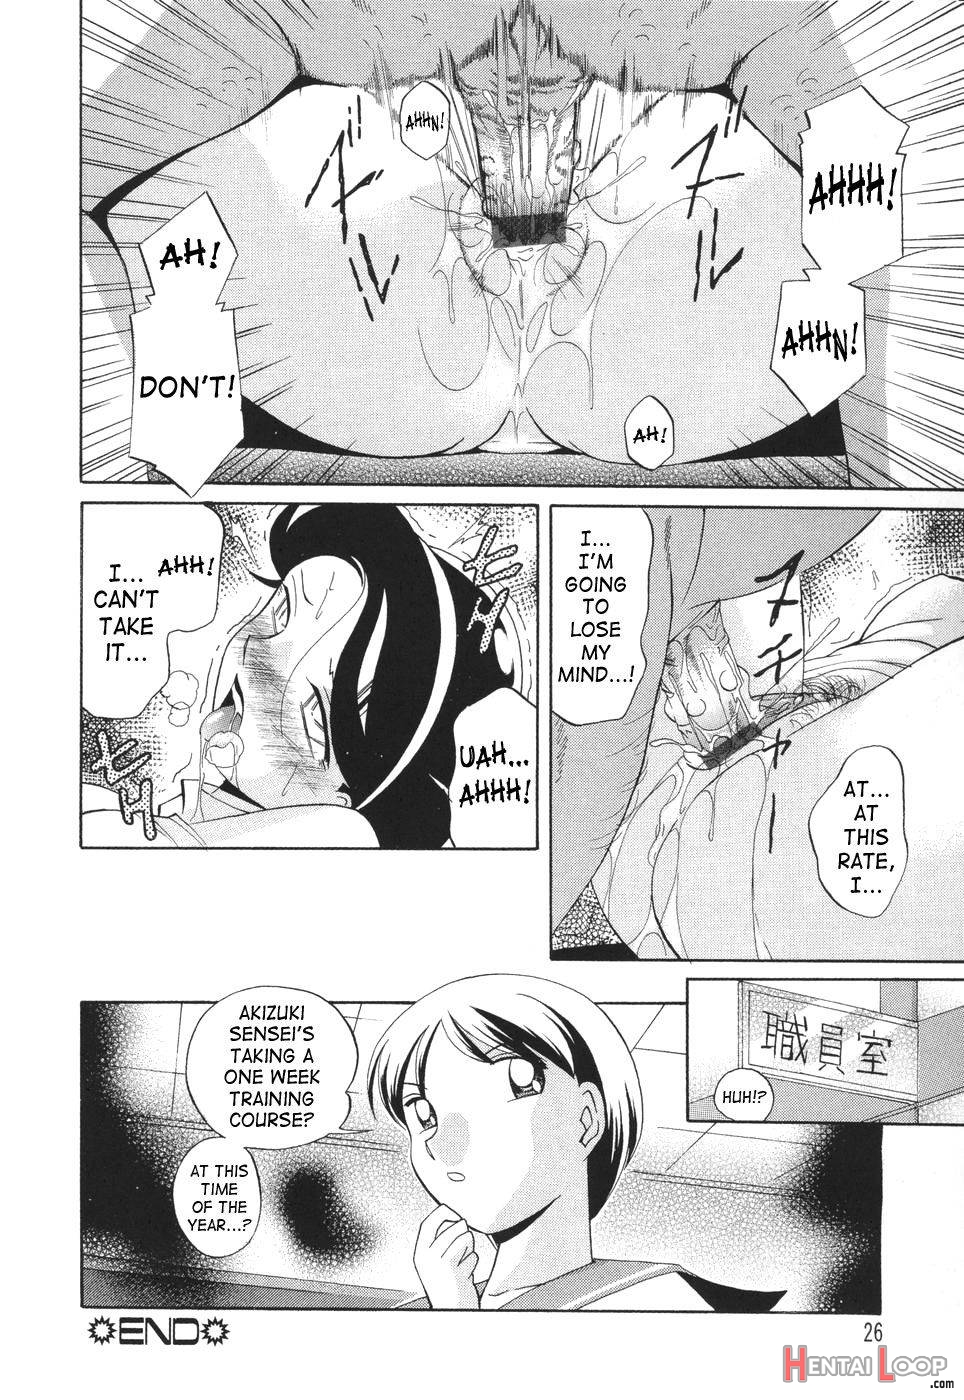 Sennou Gakuen page 26